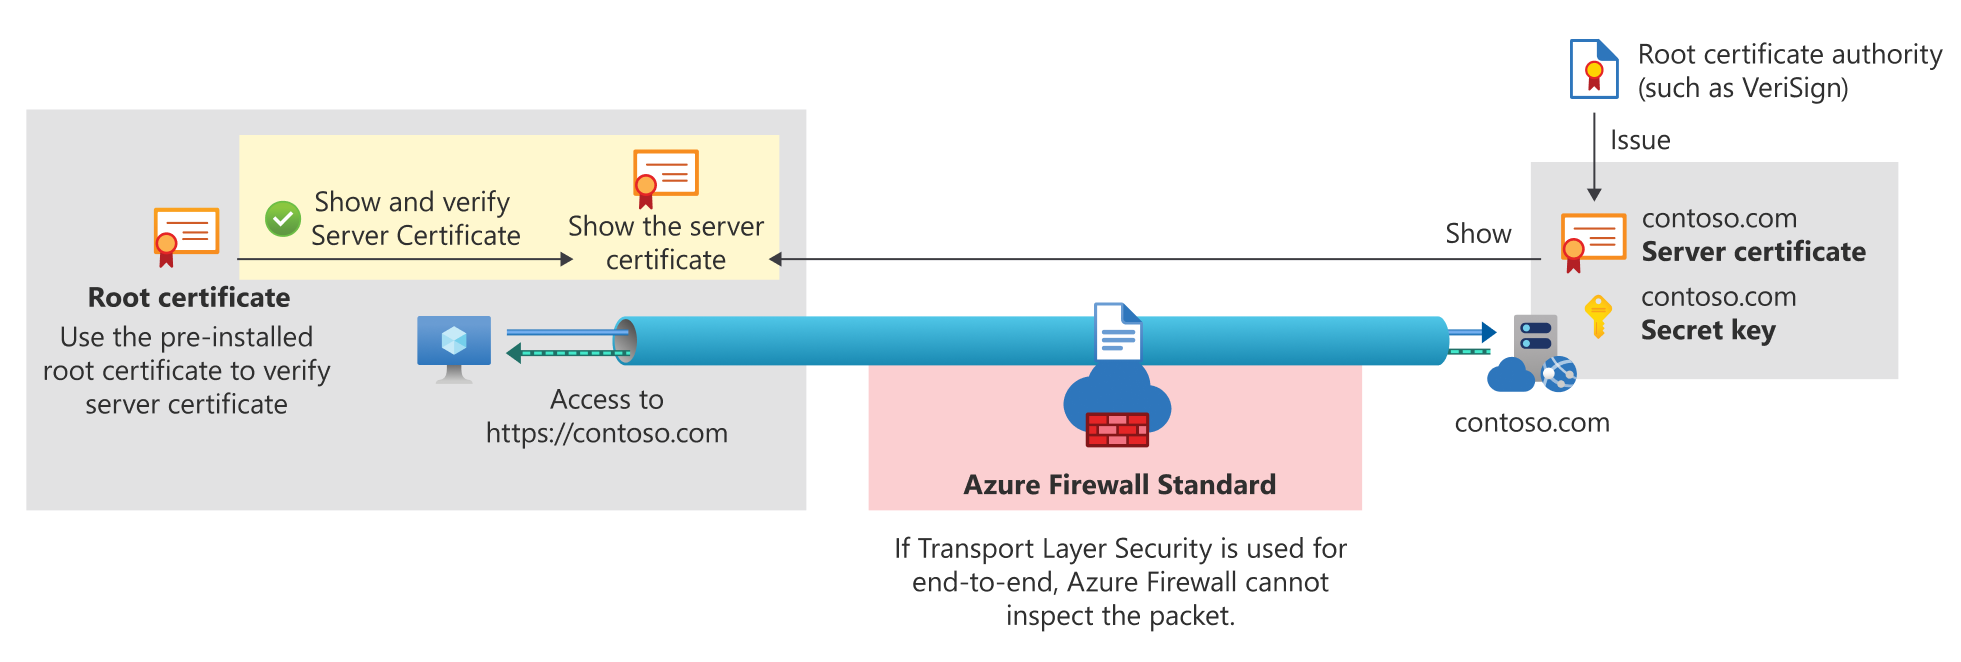 End-to-End-TLS für Azure Firewall Standard